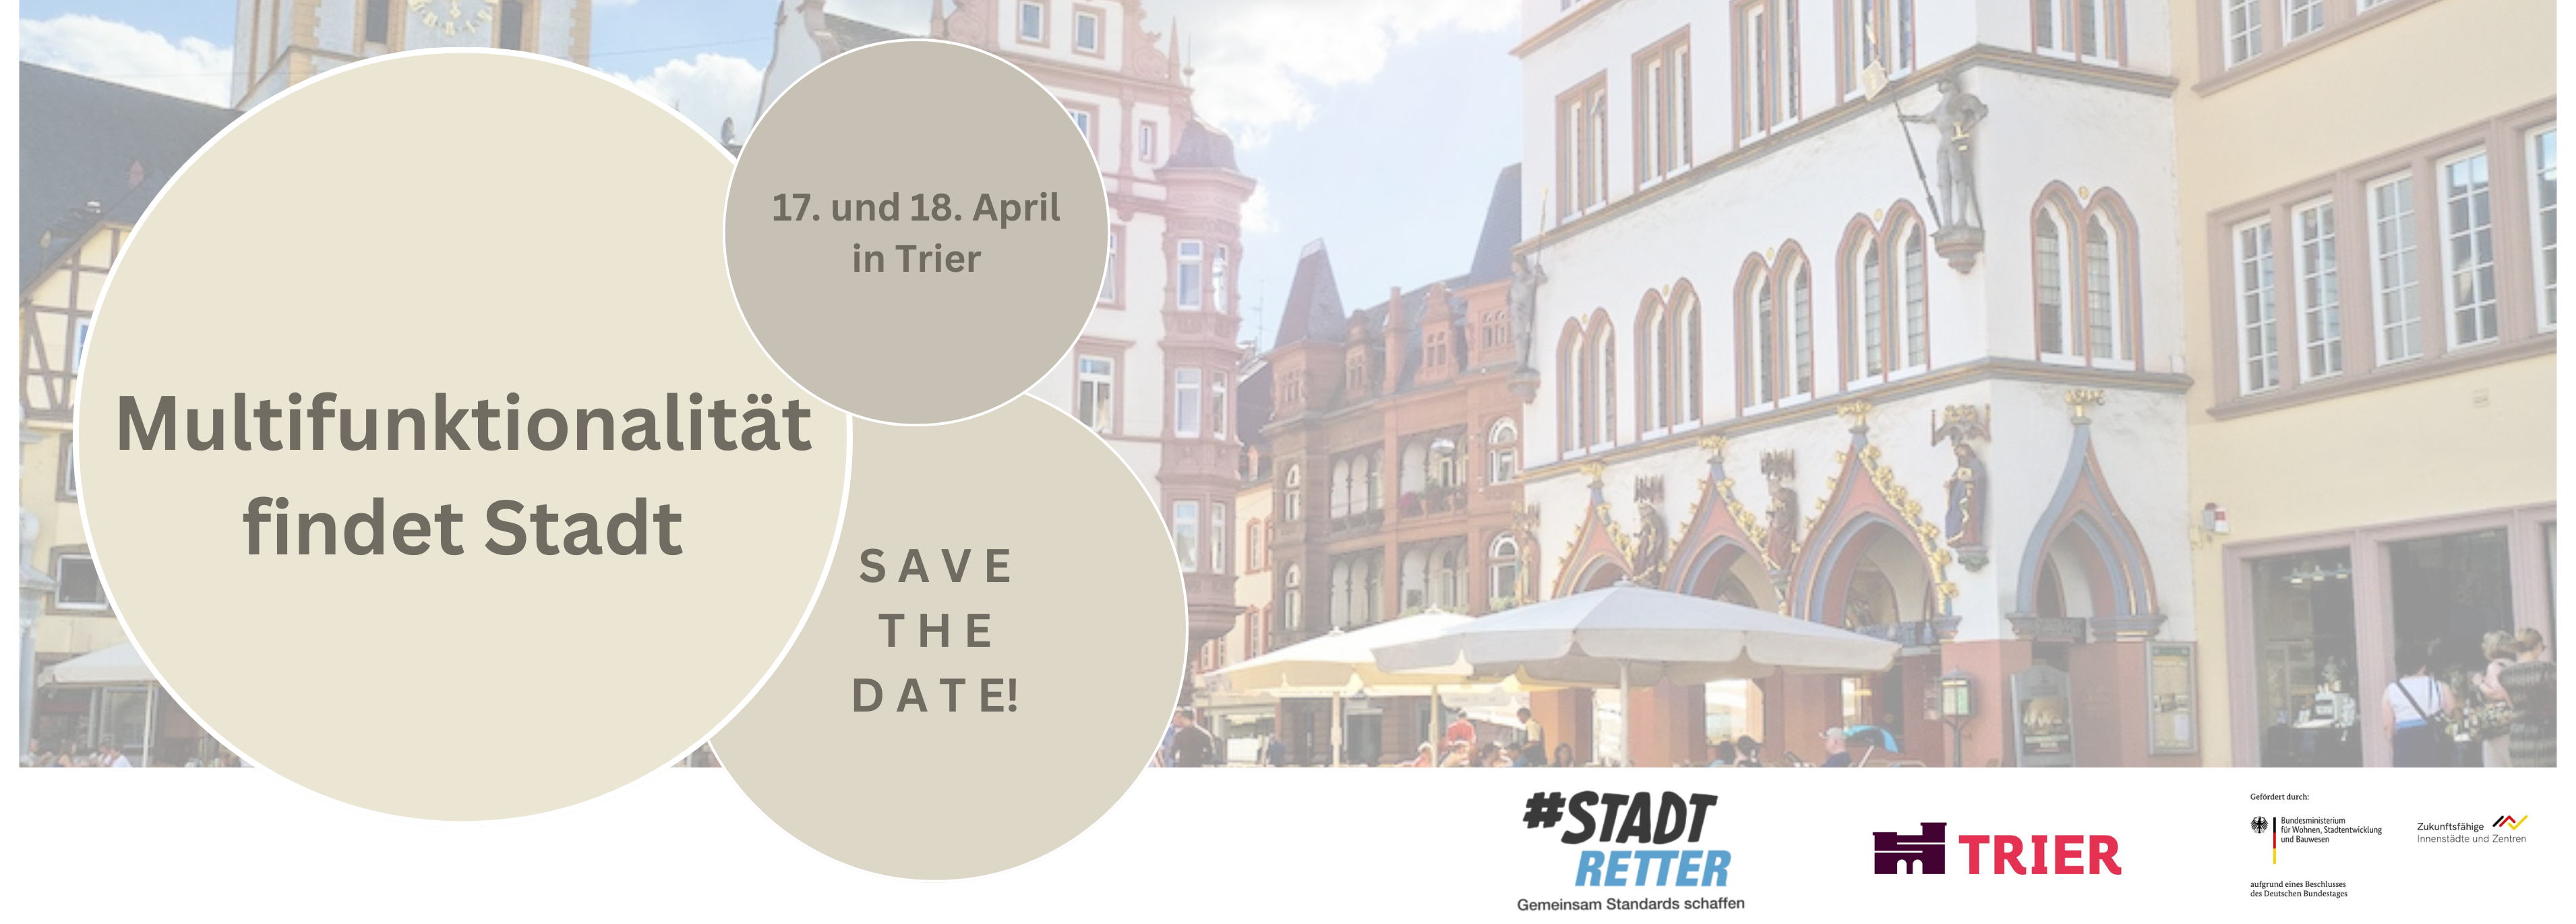 Multifunktionalität findet Stadt am 17. und 18. April in Trier (1)